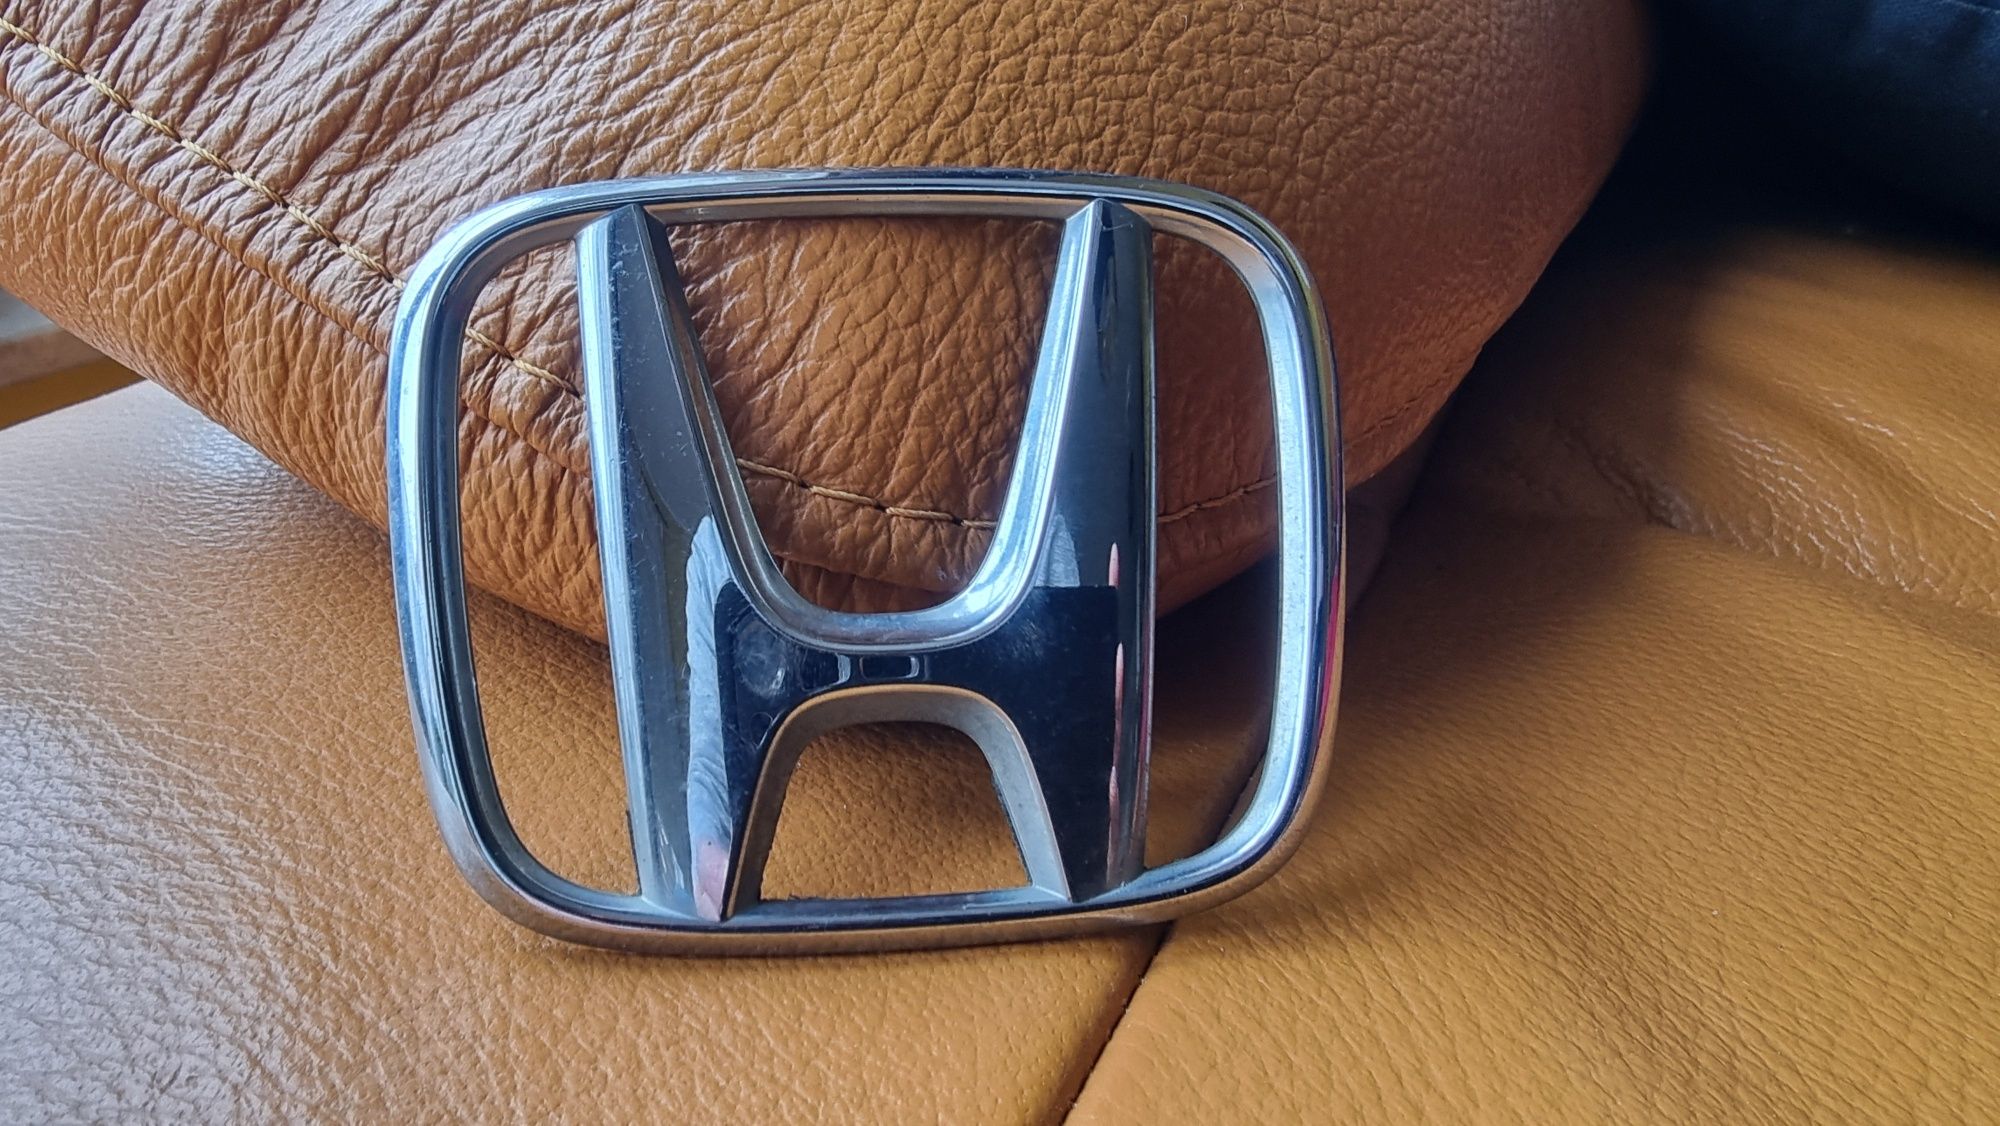 Znaczek Honda emblemat oryginalny OEM z klapy Accord VII